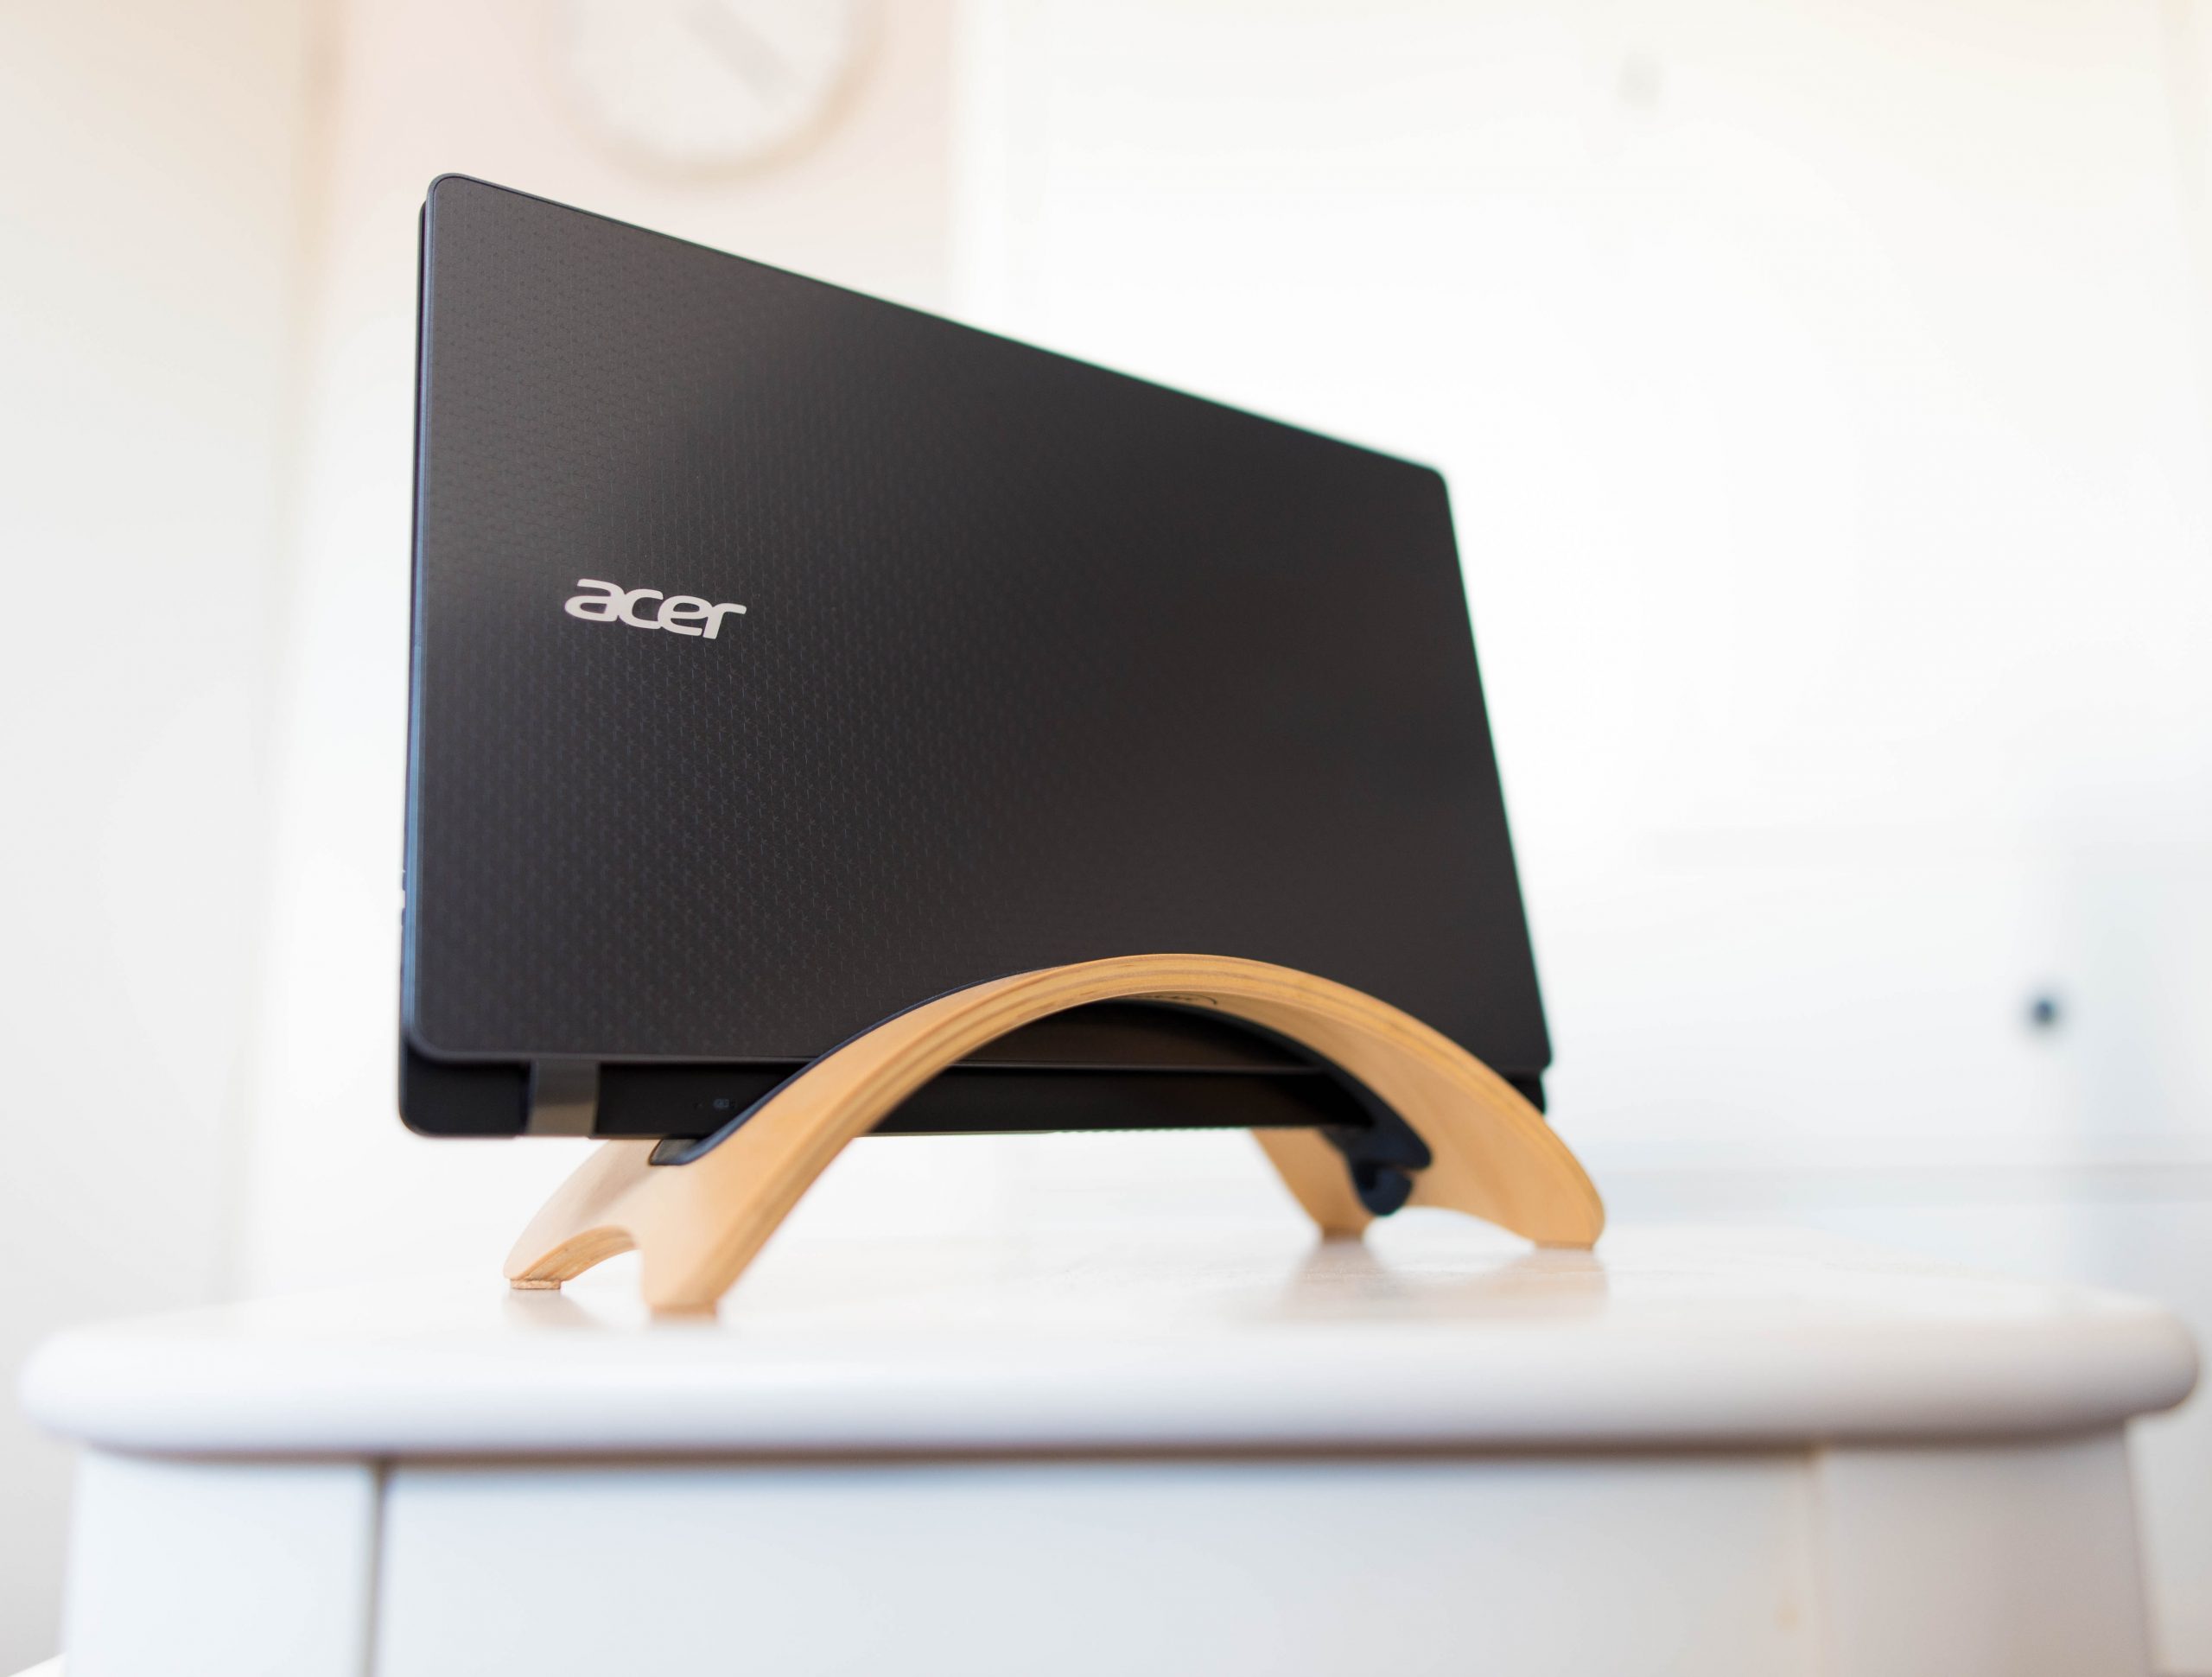 Acer jadi merek komputer Chromebook teratas di kuarter ke-4 2021